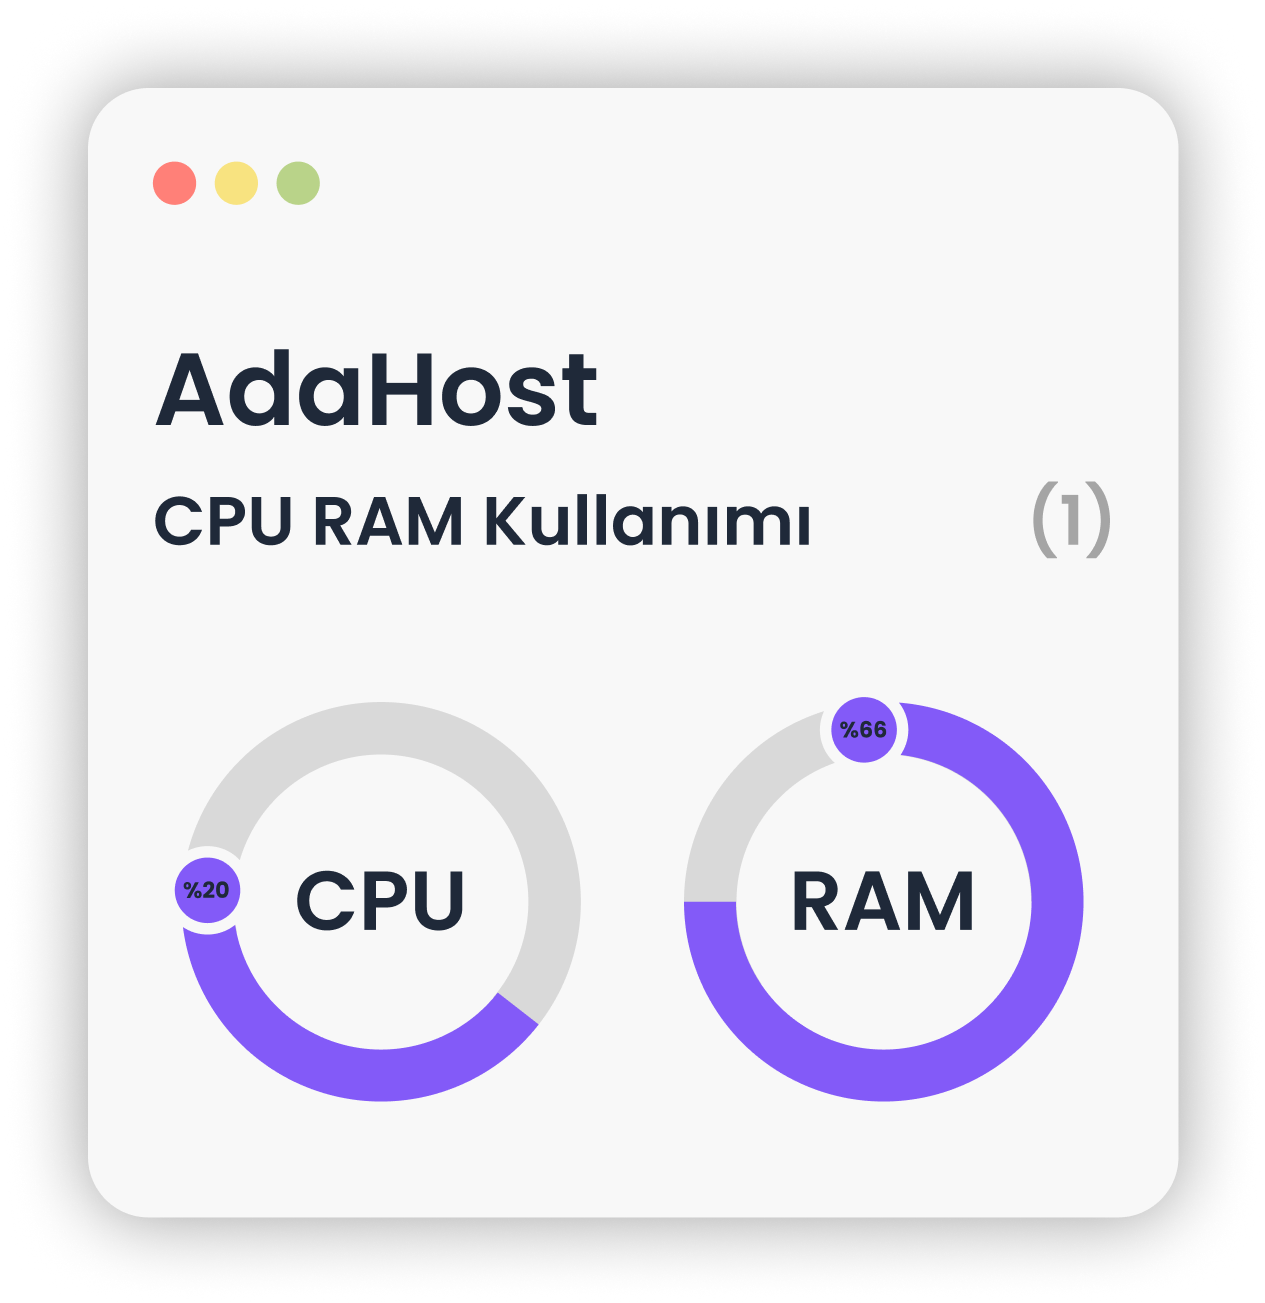 CPU and RAM usage